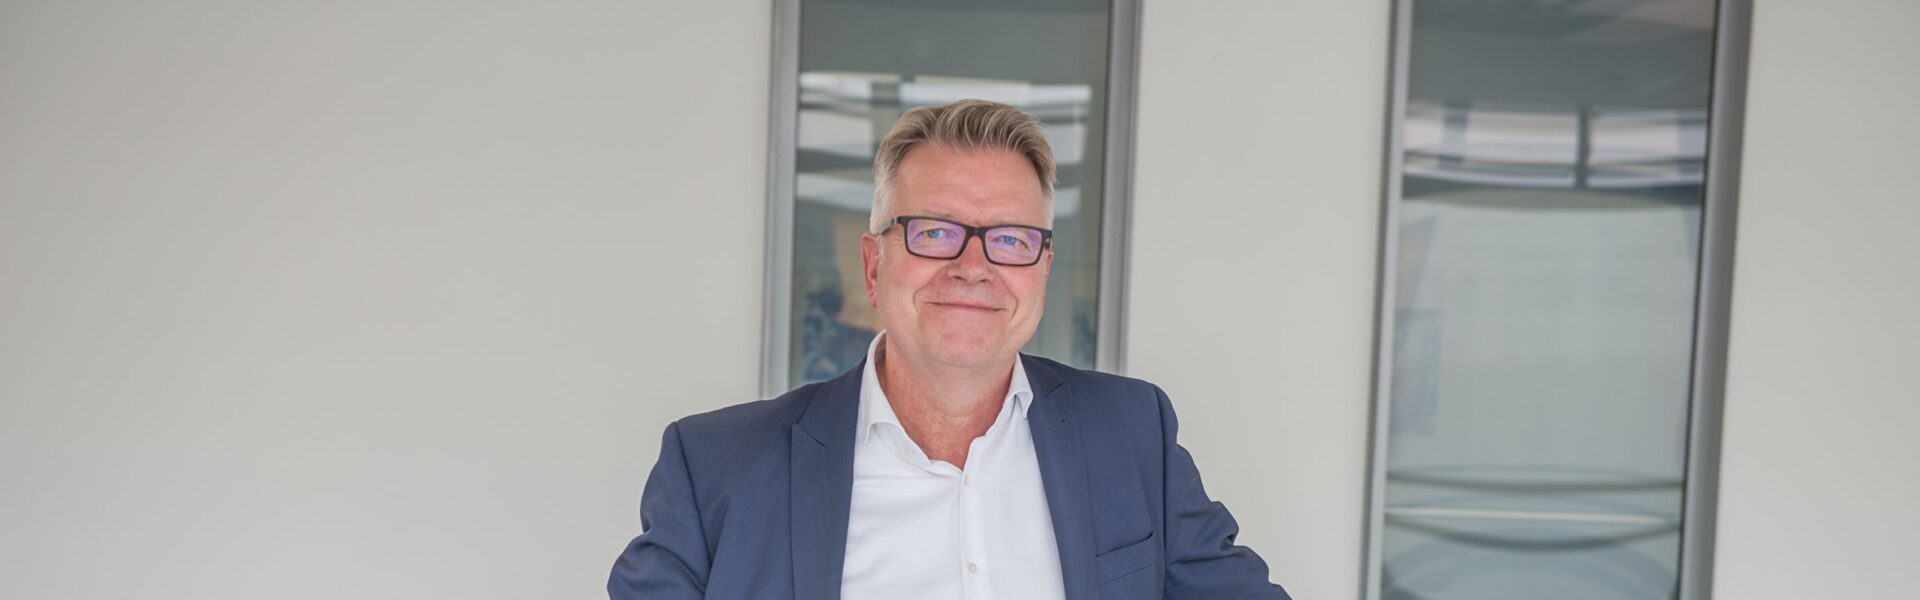 Header Bild Dr. Jörg Noetzel wird neuer Medizinischer Geschäftsführer am Klinikum Darmstadt